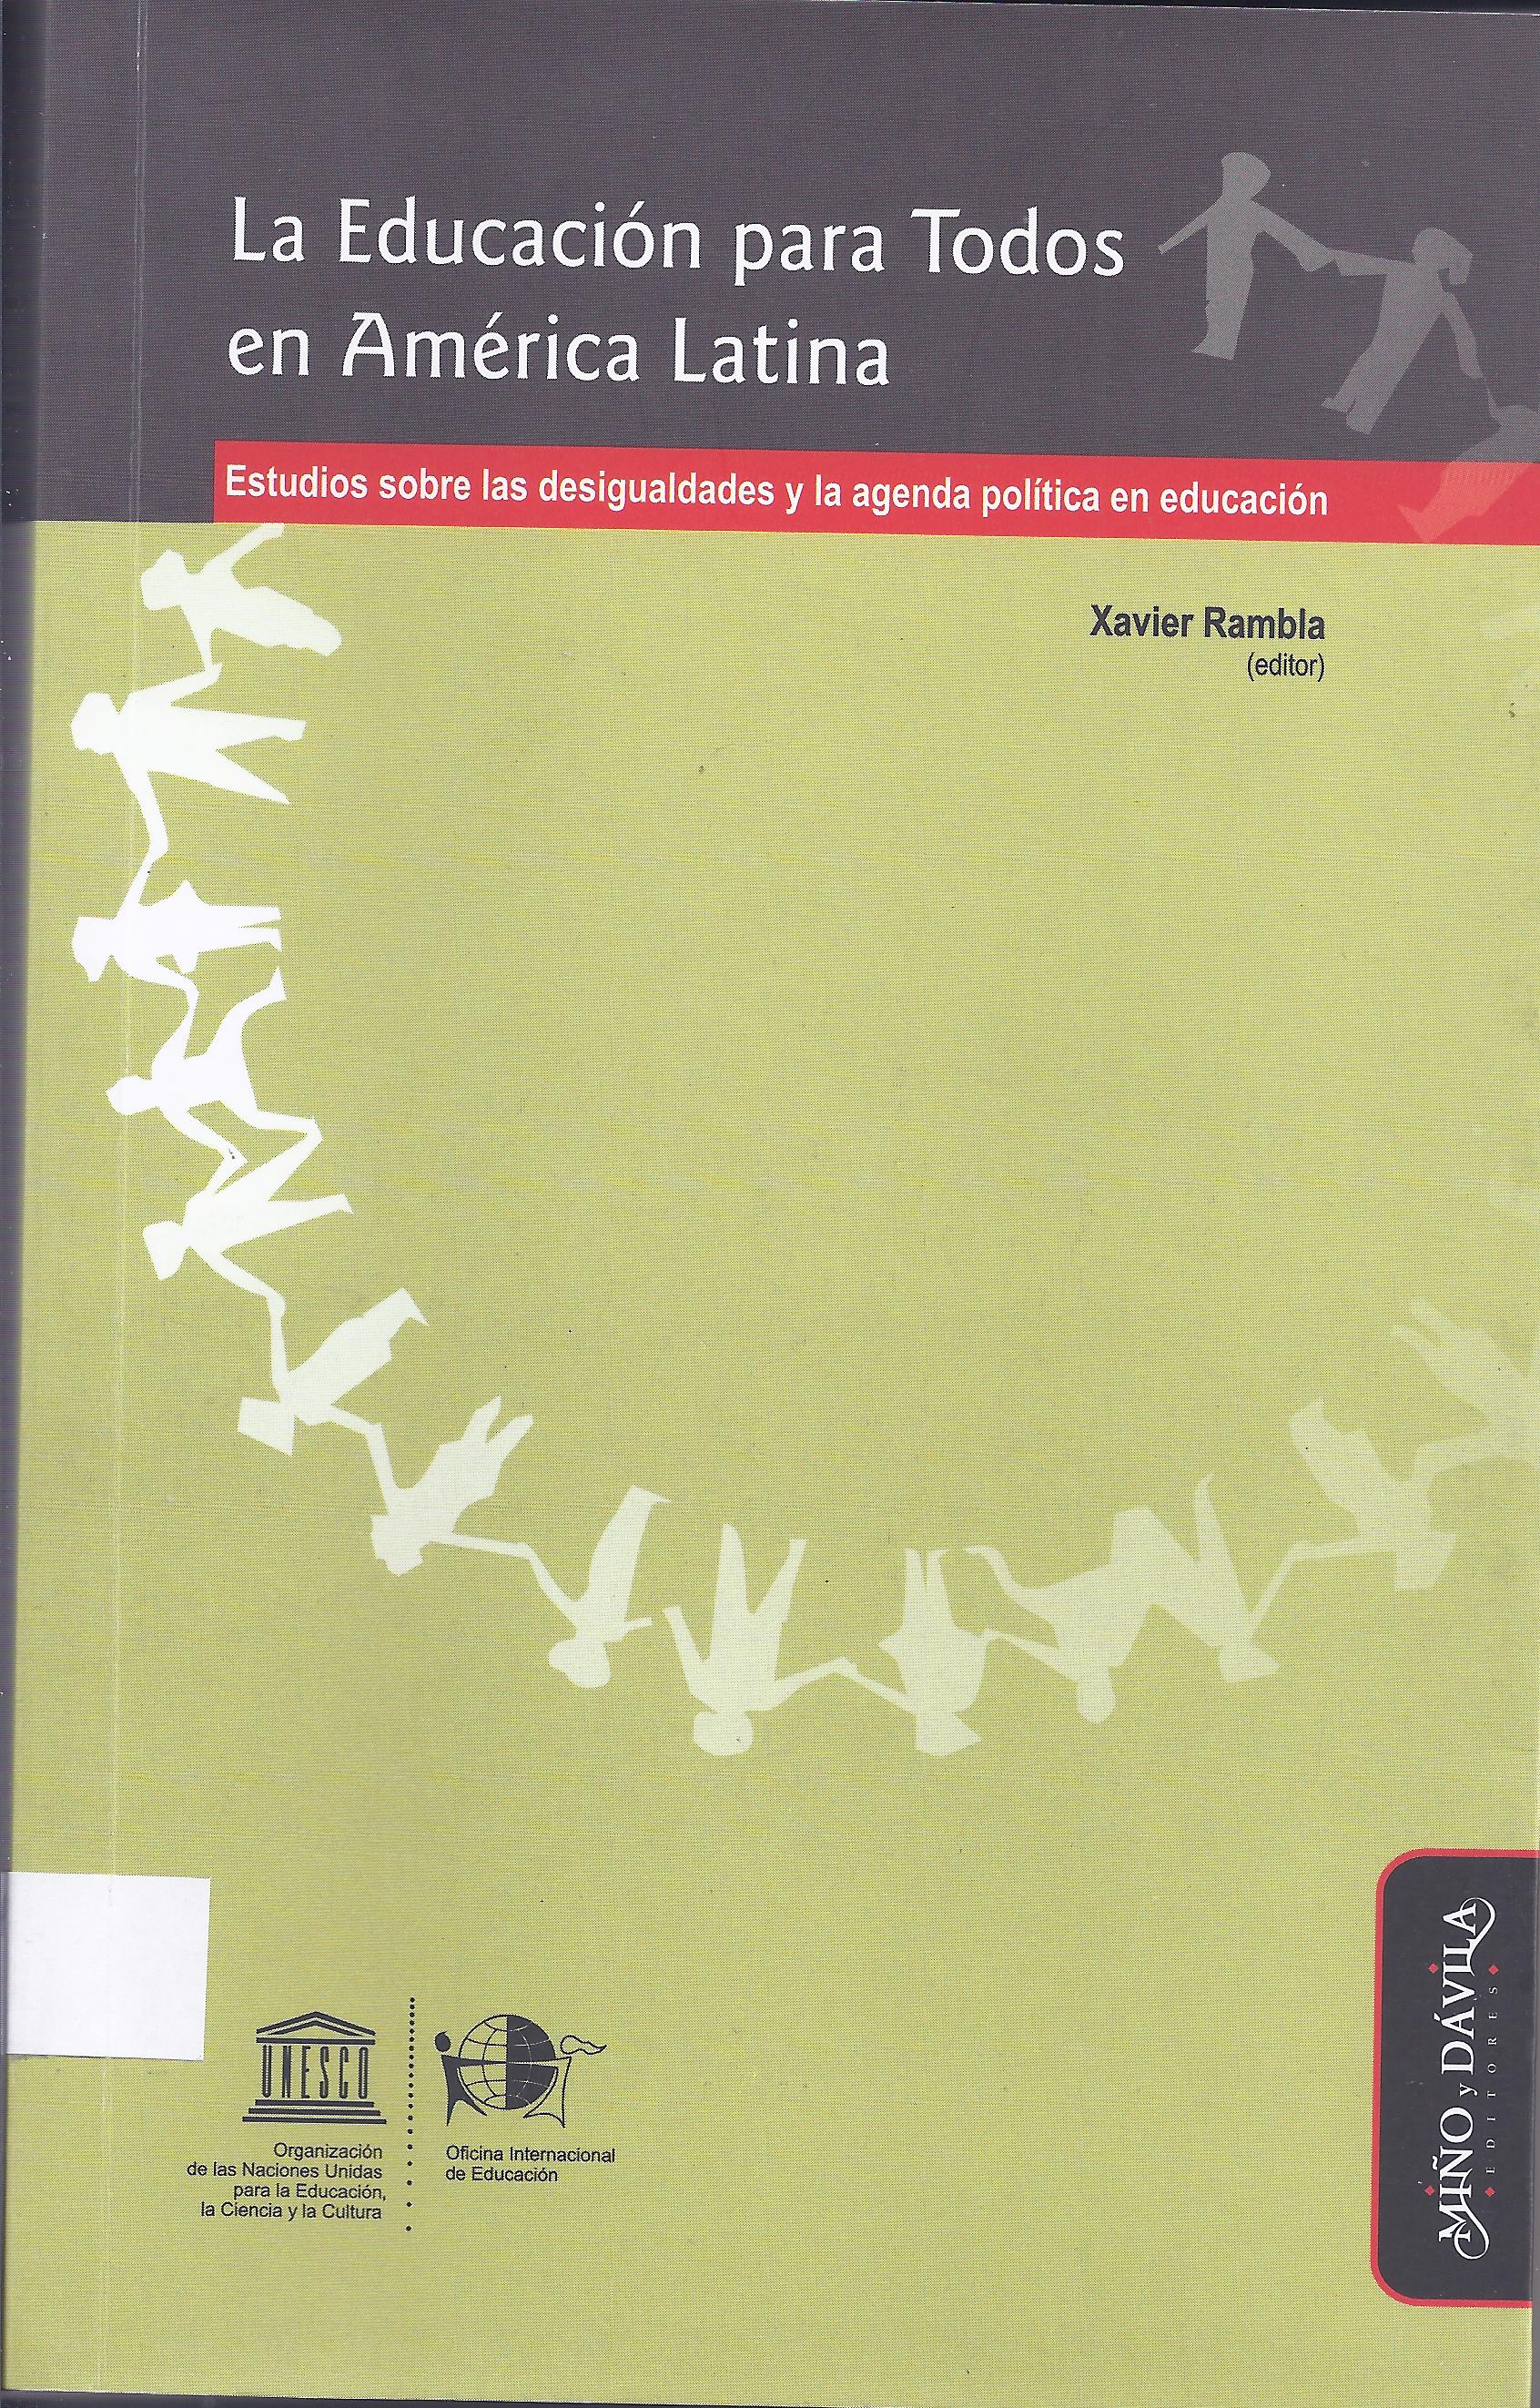 La Educación para todos en América Latina. Estudios sobre las desigualdades y la agenda política en educación.